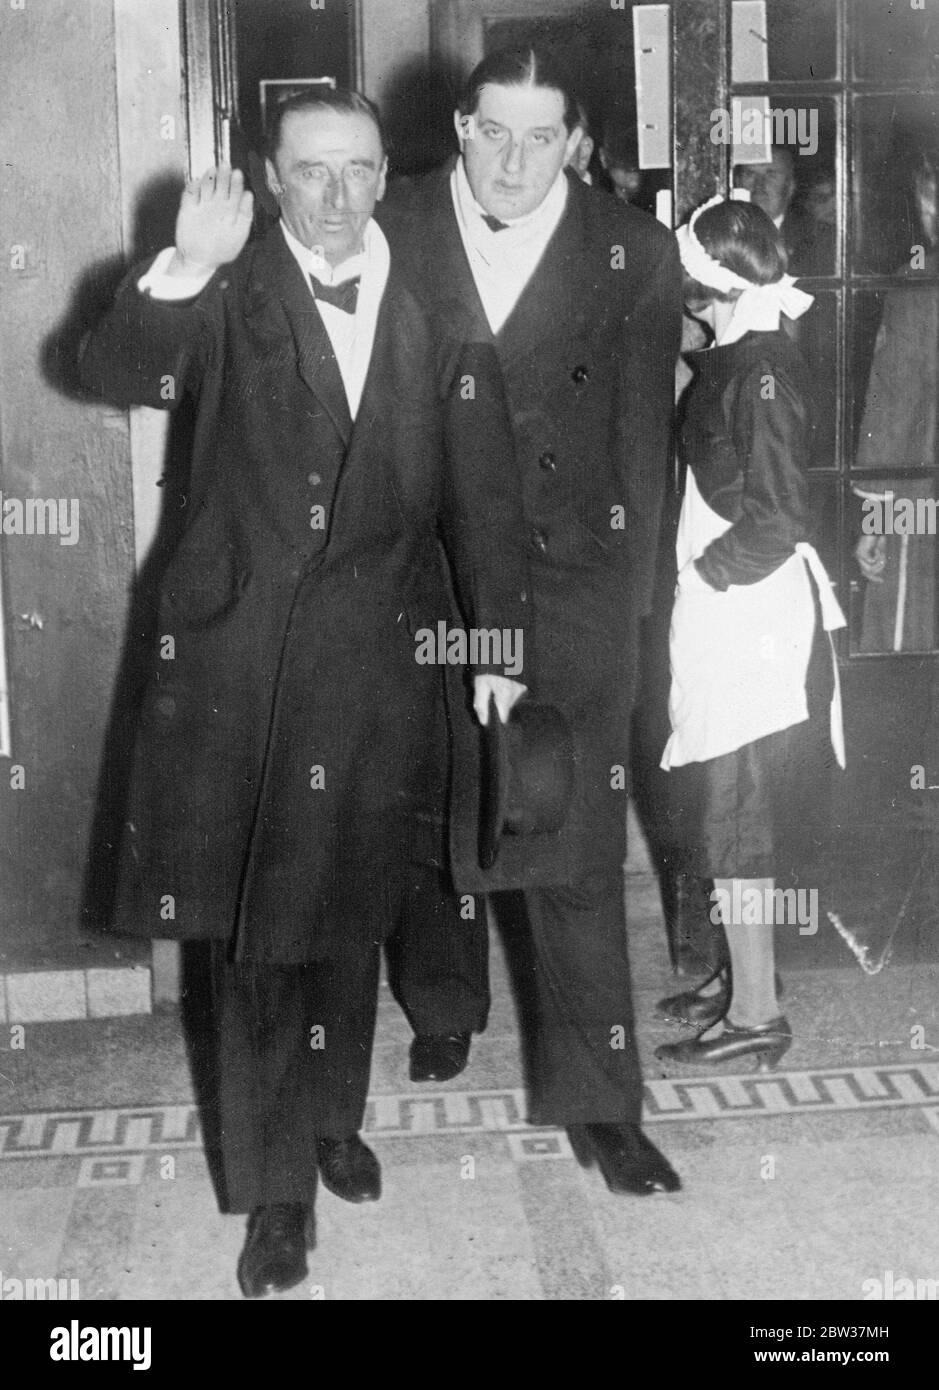 Lord Mottistone sieht Nazi-Film in Berlin. Lord Mottistone, der Berlin besucht eine Gala-Performance des Films "Hans Westmar, einer der vielen, die sich mit der Nazi-Bewegung. Lord Mottistone wurde von Herrn Milch, Chef des deutschen Luftverkehrs, und Dr. Hanfstaengl, ein Mitglied der Nazi-Partei und jetzt einer der Chef-Leutnants Hitlers begleitet. Foto zeigt, von links nach rechts, Herr Milch, Lord Mottistone und Dr. Hanfstaengl. 11. Januar 1934 Stockfoto